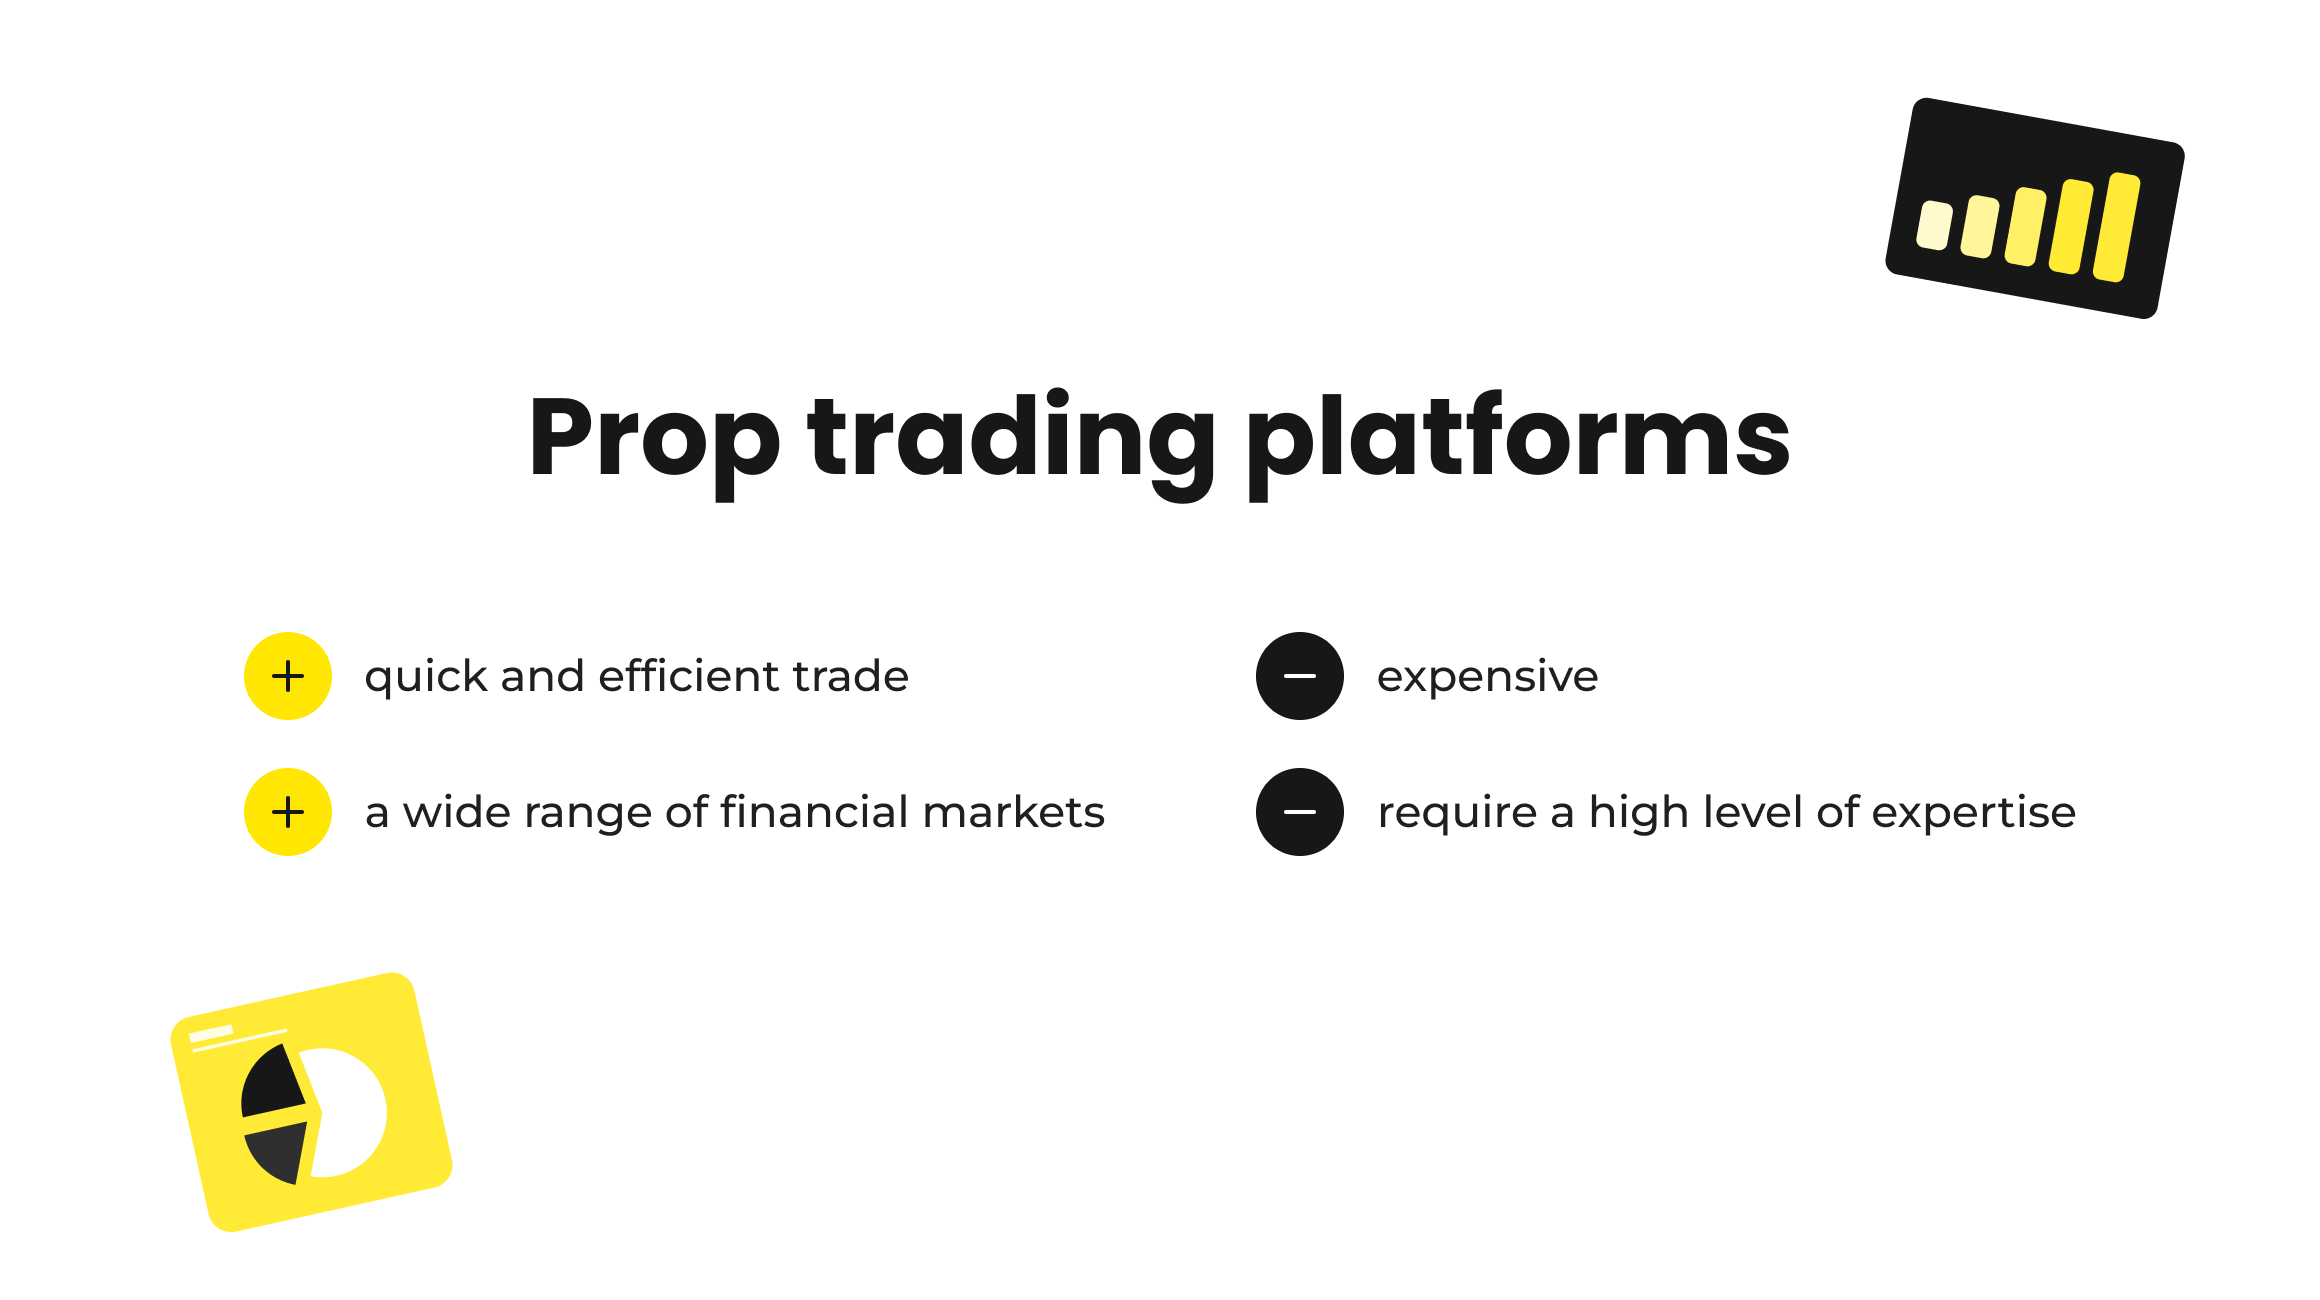 Prop trading platforms